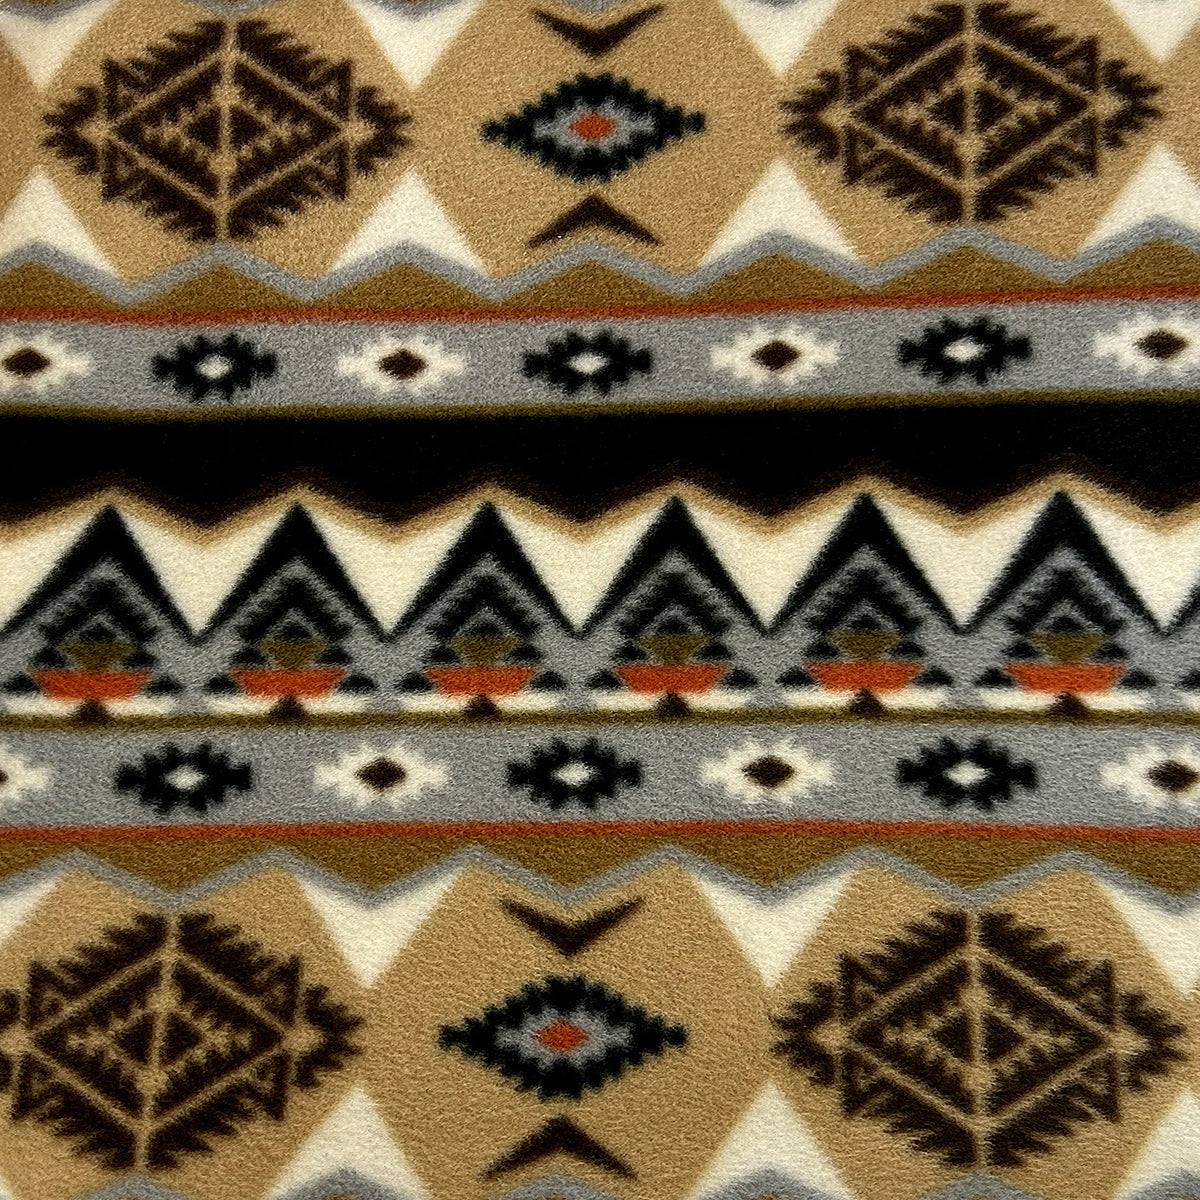 Native Pattern Fleece Western Blanket in Tan & Black